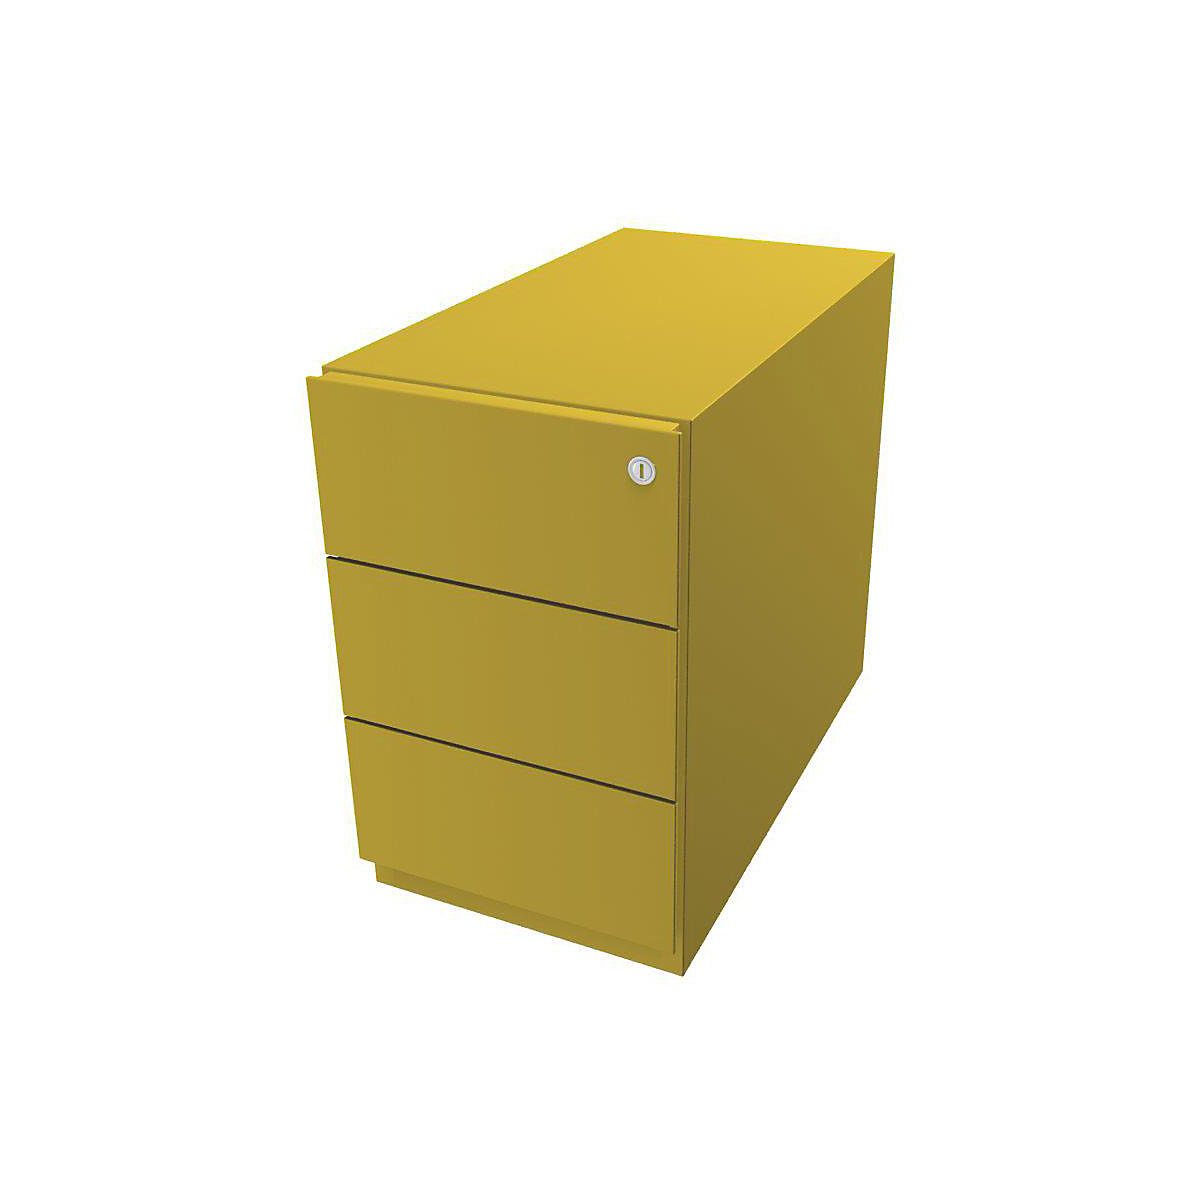 Pokretni ladičar Note™, s 3 univerzalne ladice – BISLEY, VxŠxD 495 x 300 x 565 mm, s letvicom za hvatanje, u žutoj boji-1